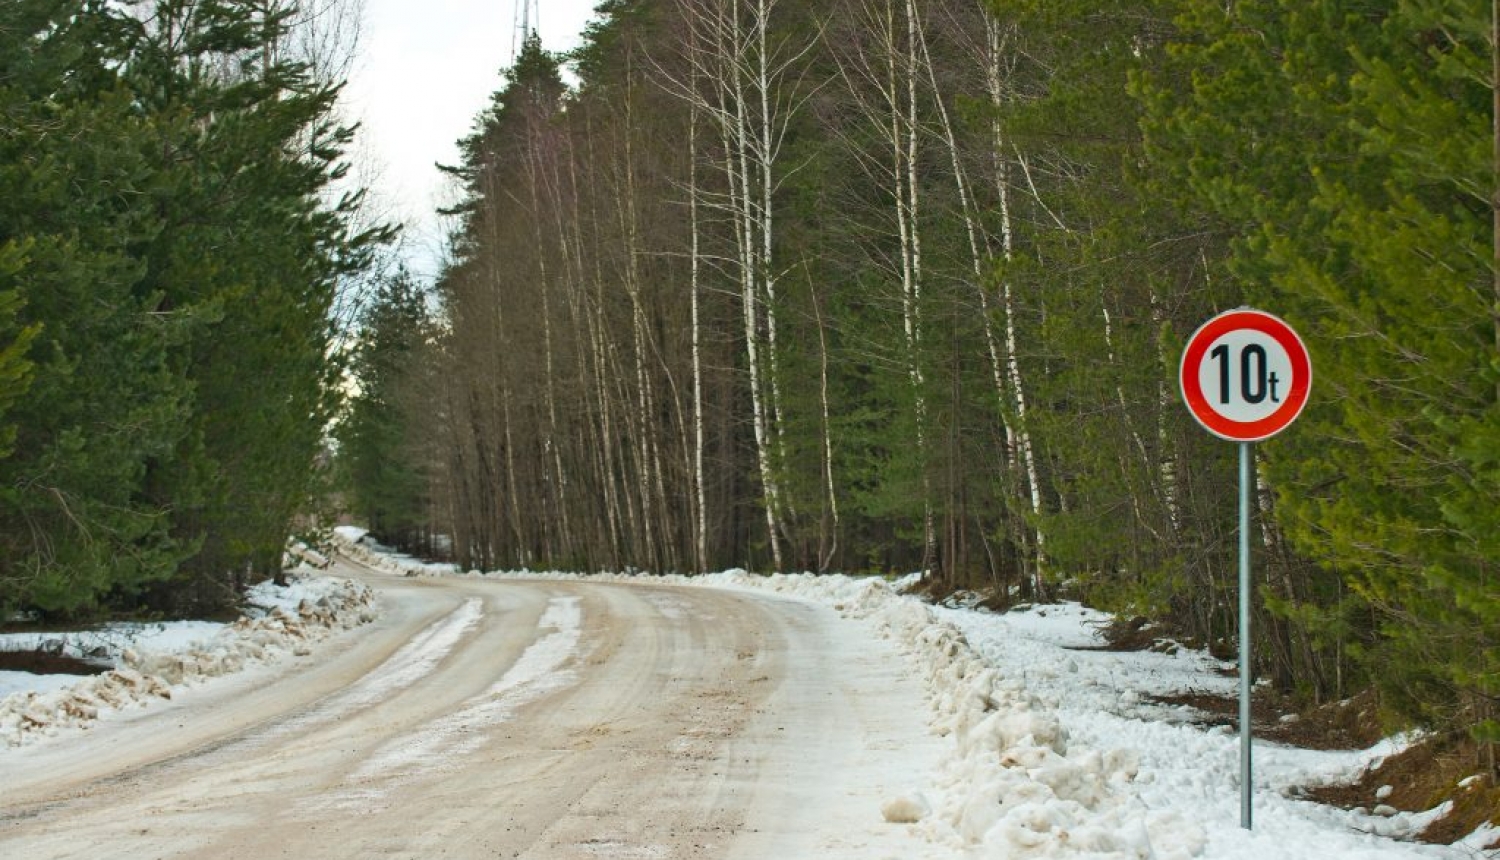 Transporta masu ierobežojoša zīme 10 tonnas uz meža ieskauta ceļa